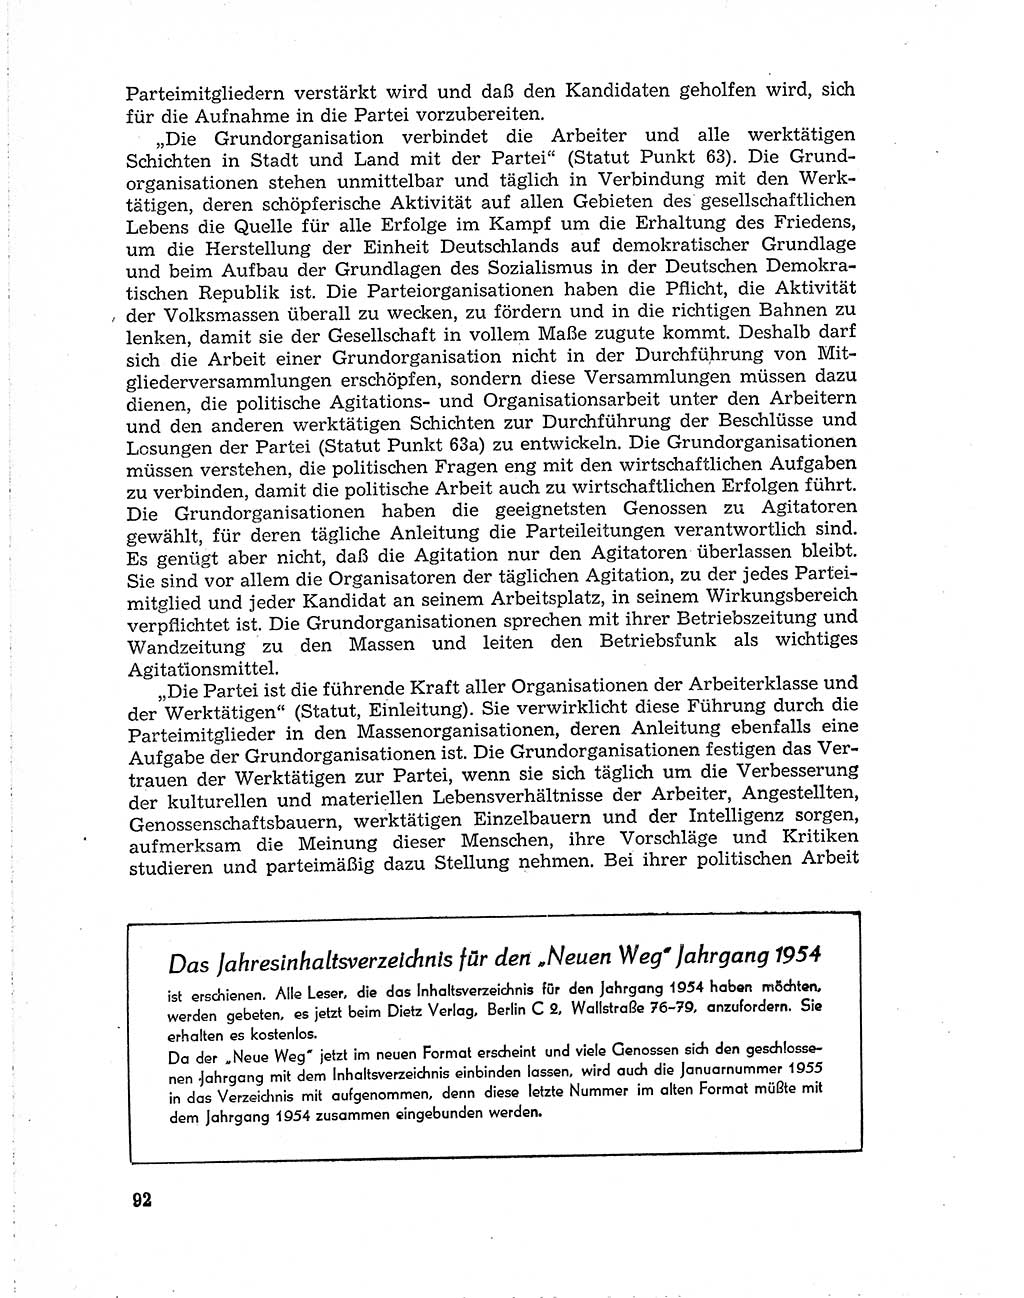 Neuer Weg (NW), Organ des Zentralkomitees (ZK) der SED (Sozialistische Einheitspartei Deutschlands) für Fragen des Parteiaufbaus und des Parteilebens, 10. Jahrgang [Deutsche Demokratische Republik (DDR)] 1955, Seite 92 (NW ZK SED DDR 1955, S. 92)